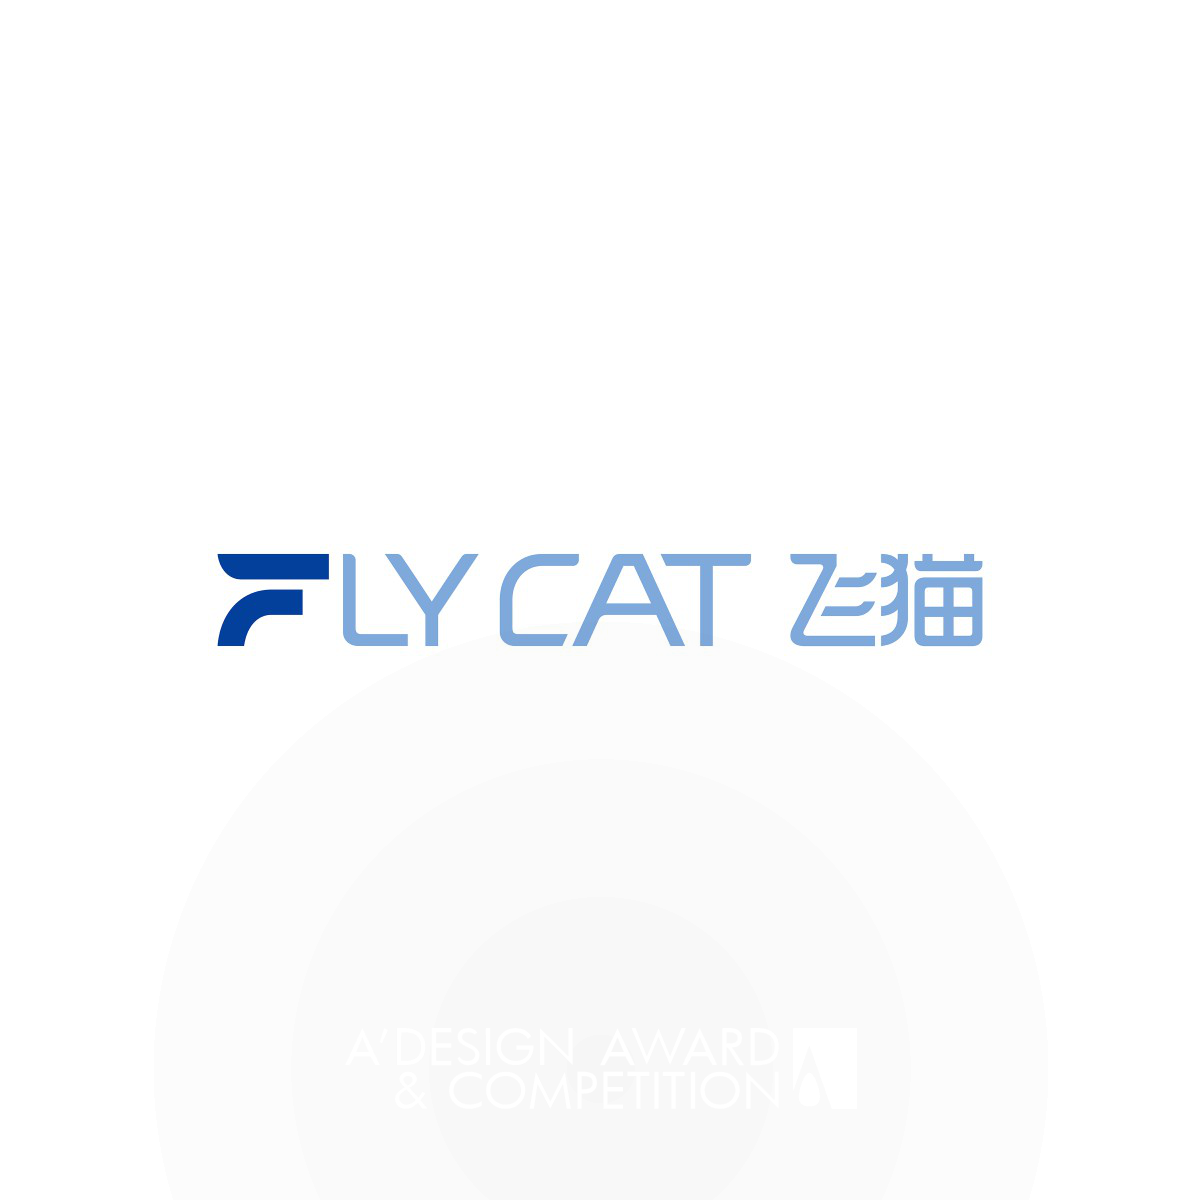 Flycat: Een Nieuwe Identiteit voor Mondzorgtechnologie